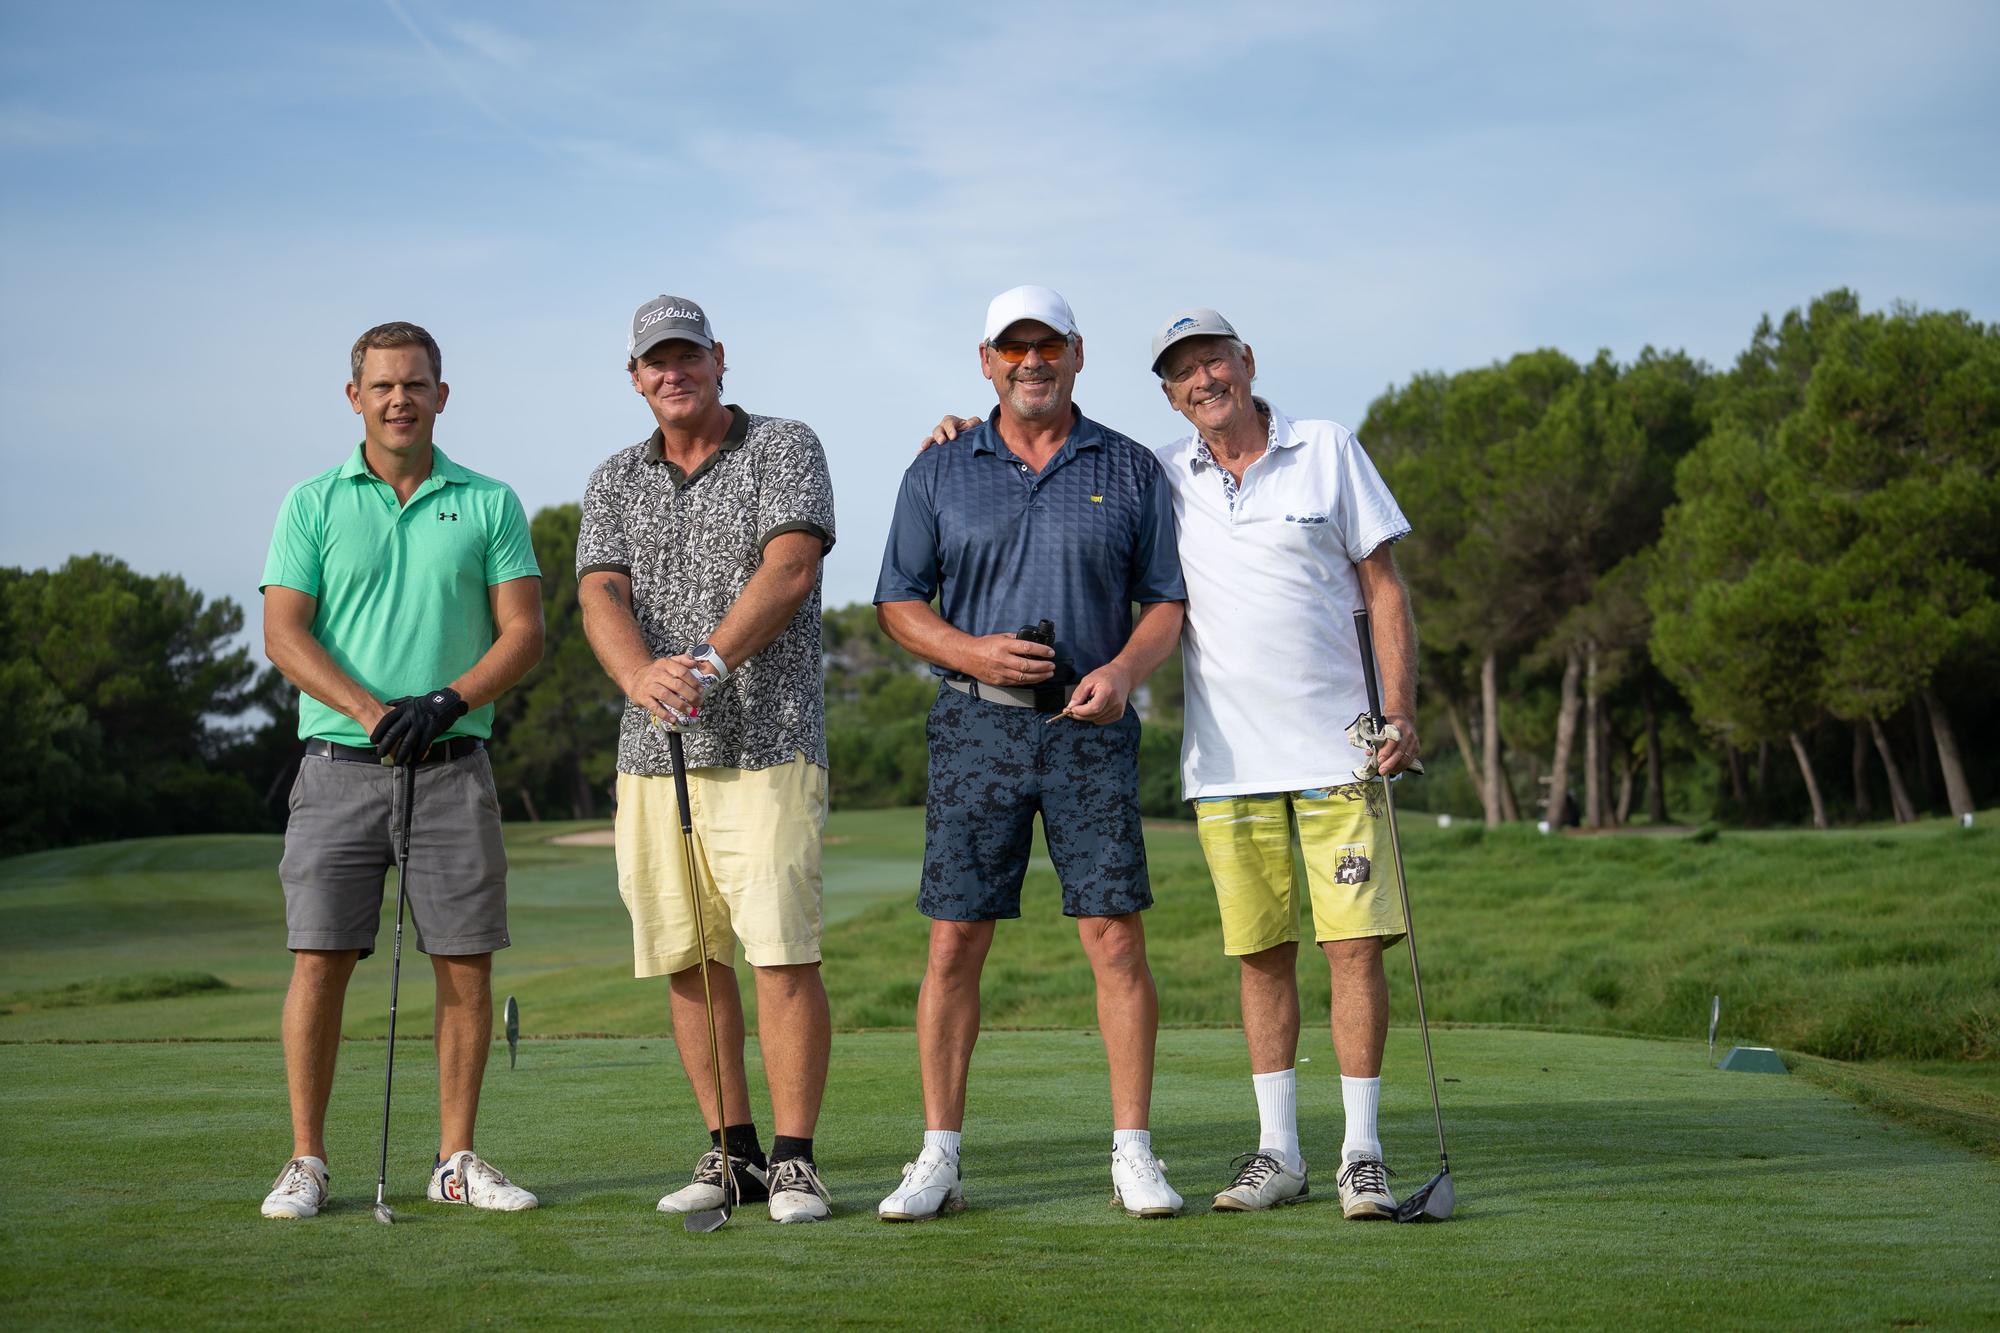 Wie bei den Profis: So war das 21. Golfturnier der Mallorca Zeitung in Alcanada